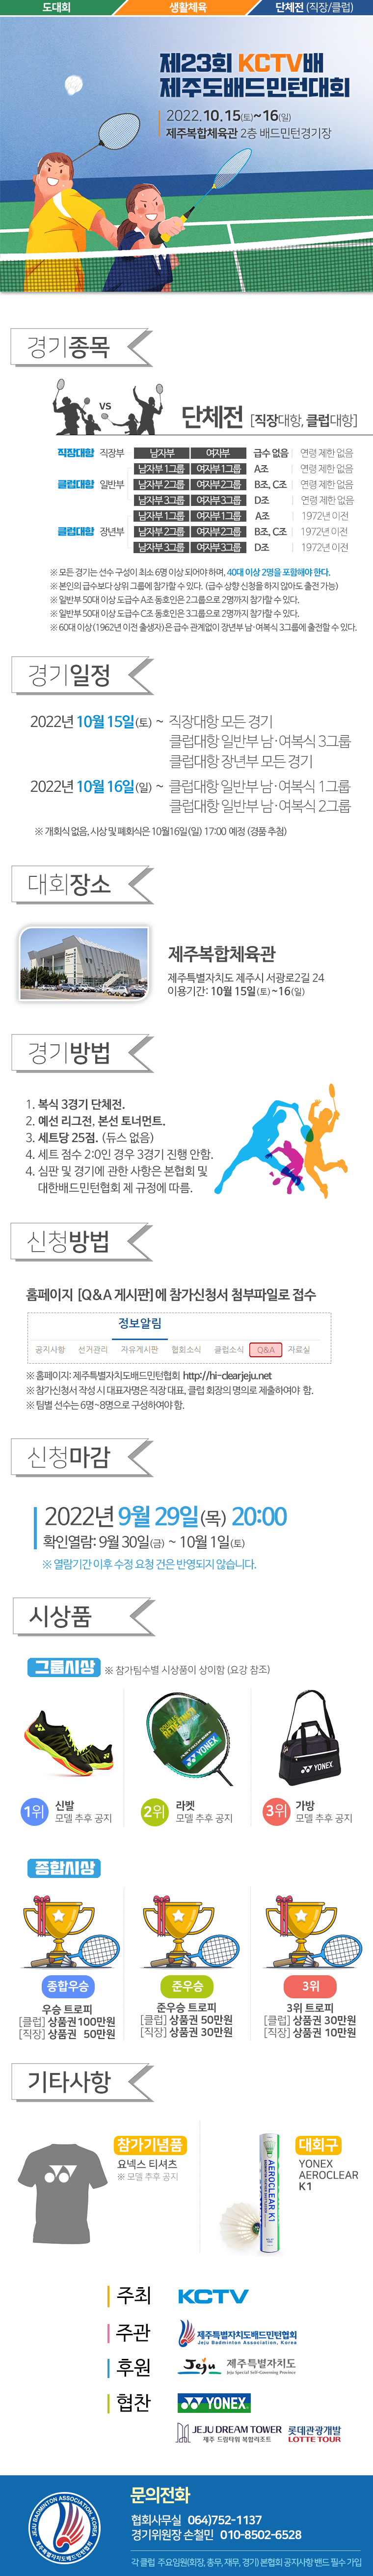 [대회] KCTV배 제주도 배드민턴대회.png